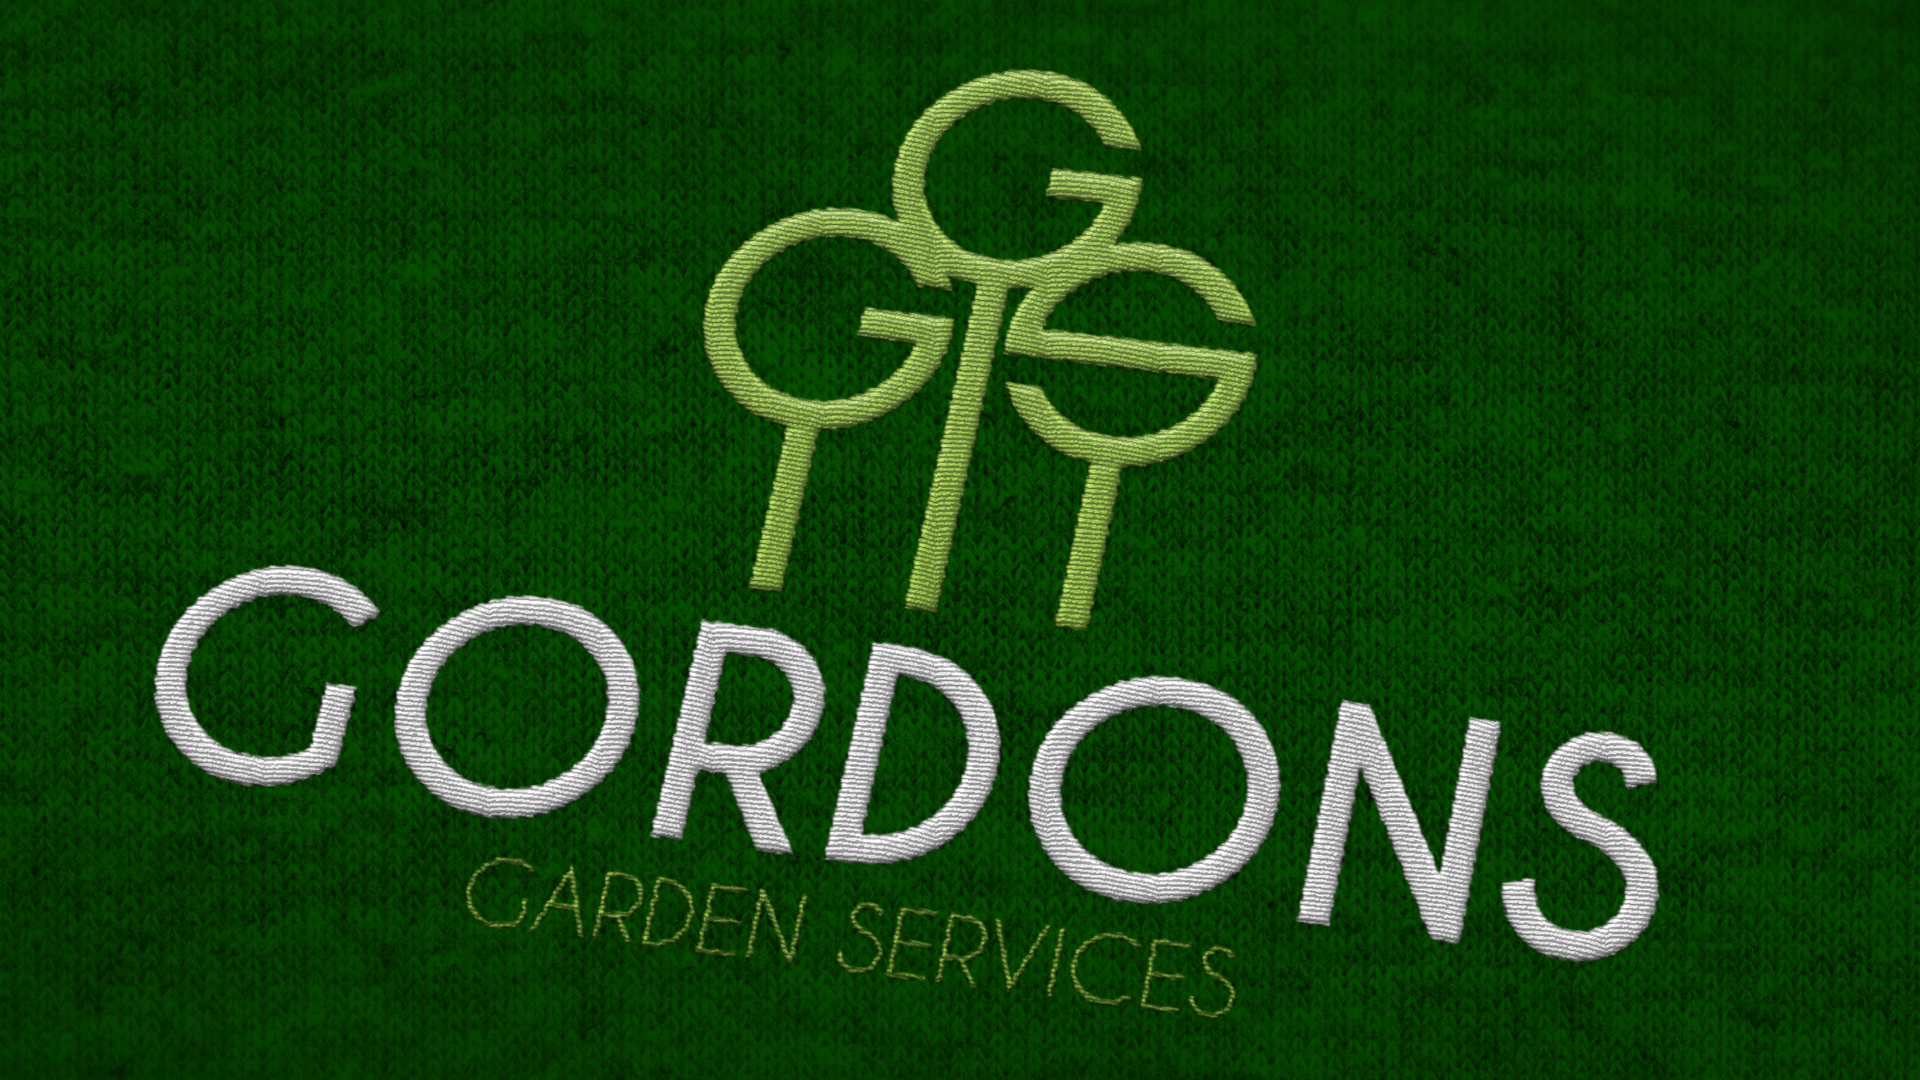 Gordons Garden Services